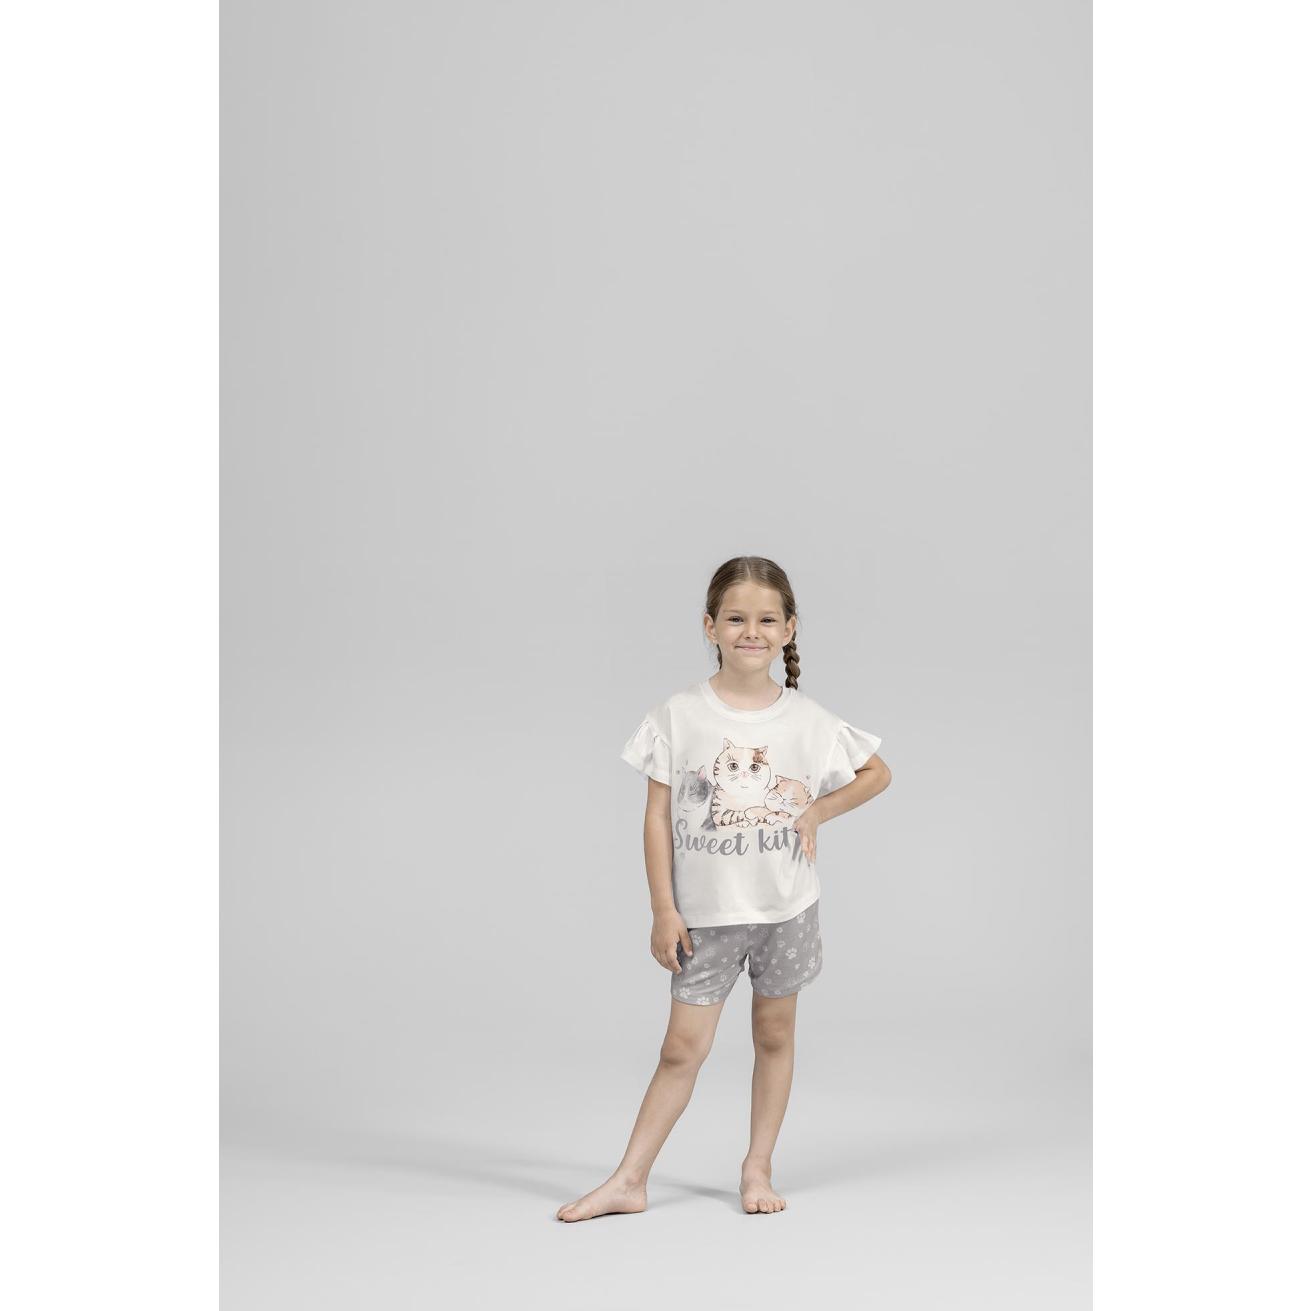 Пижама для девочек Kids by togas Китти бело-серая 92-98 см, цвет белый, размер 92-98 см - фото 4